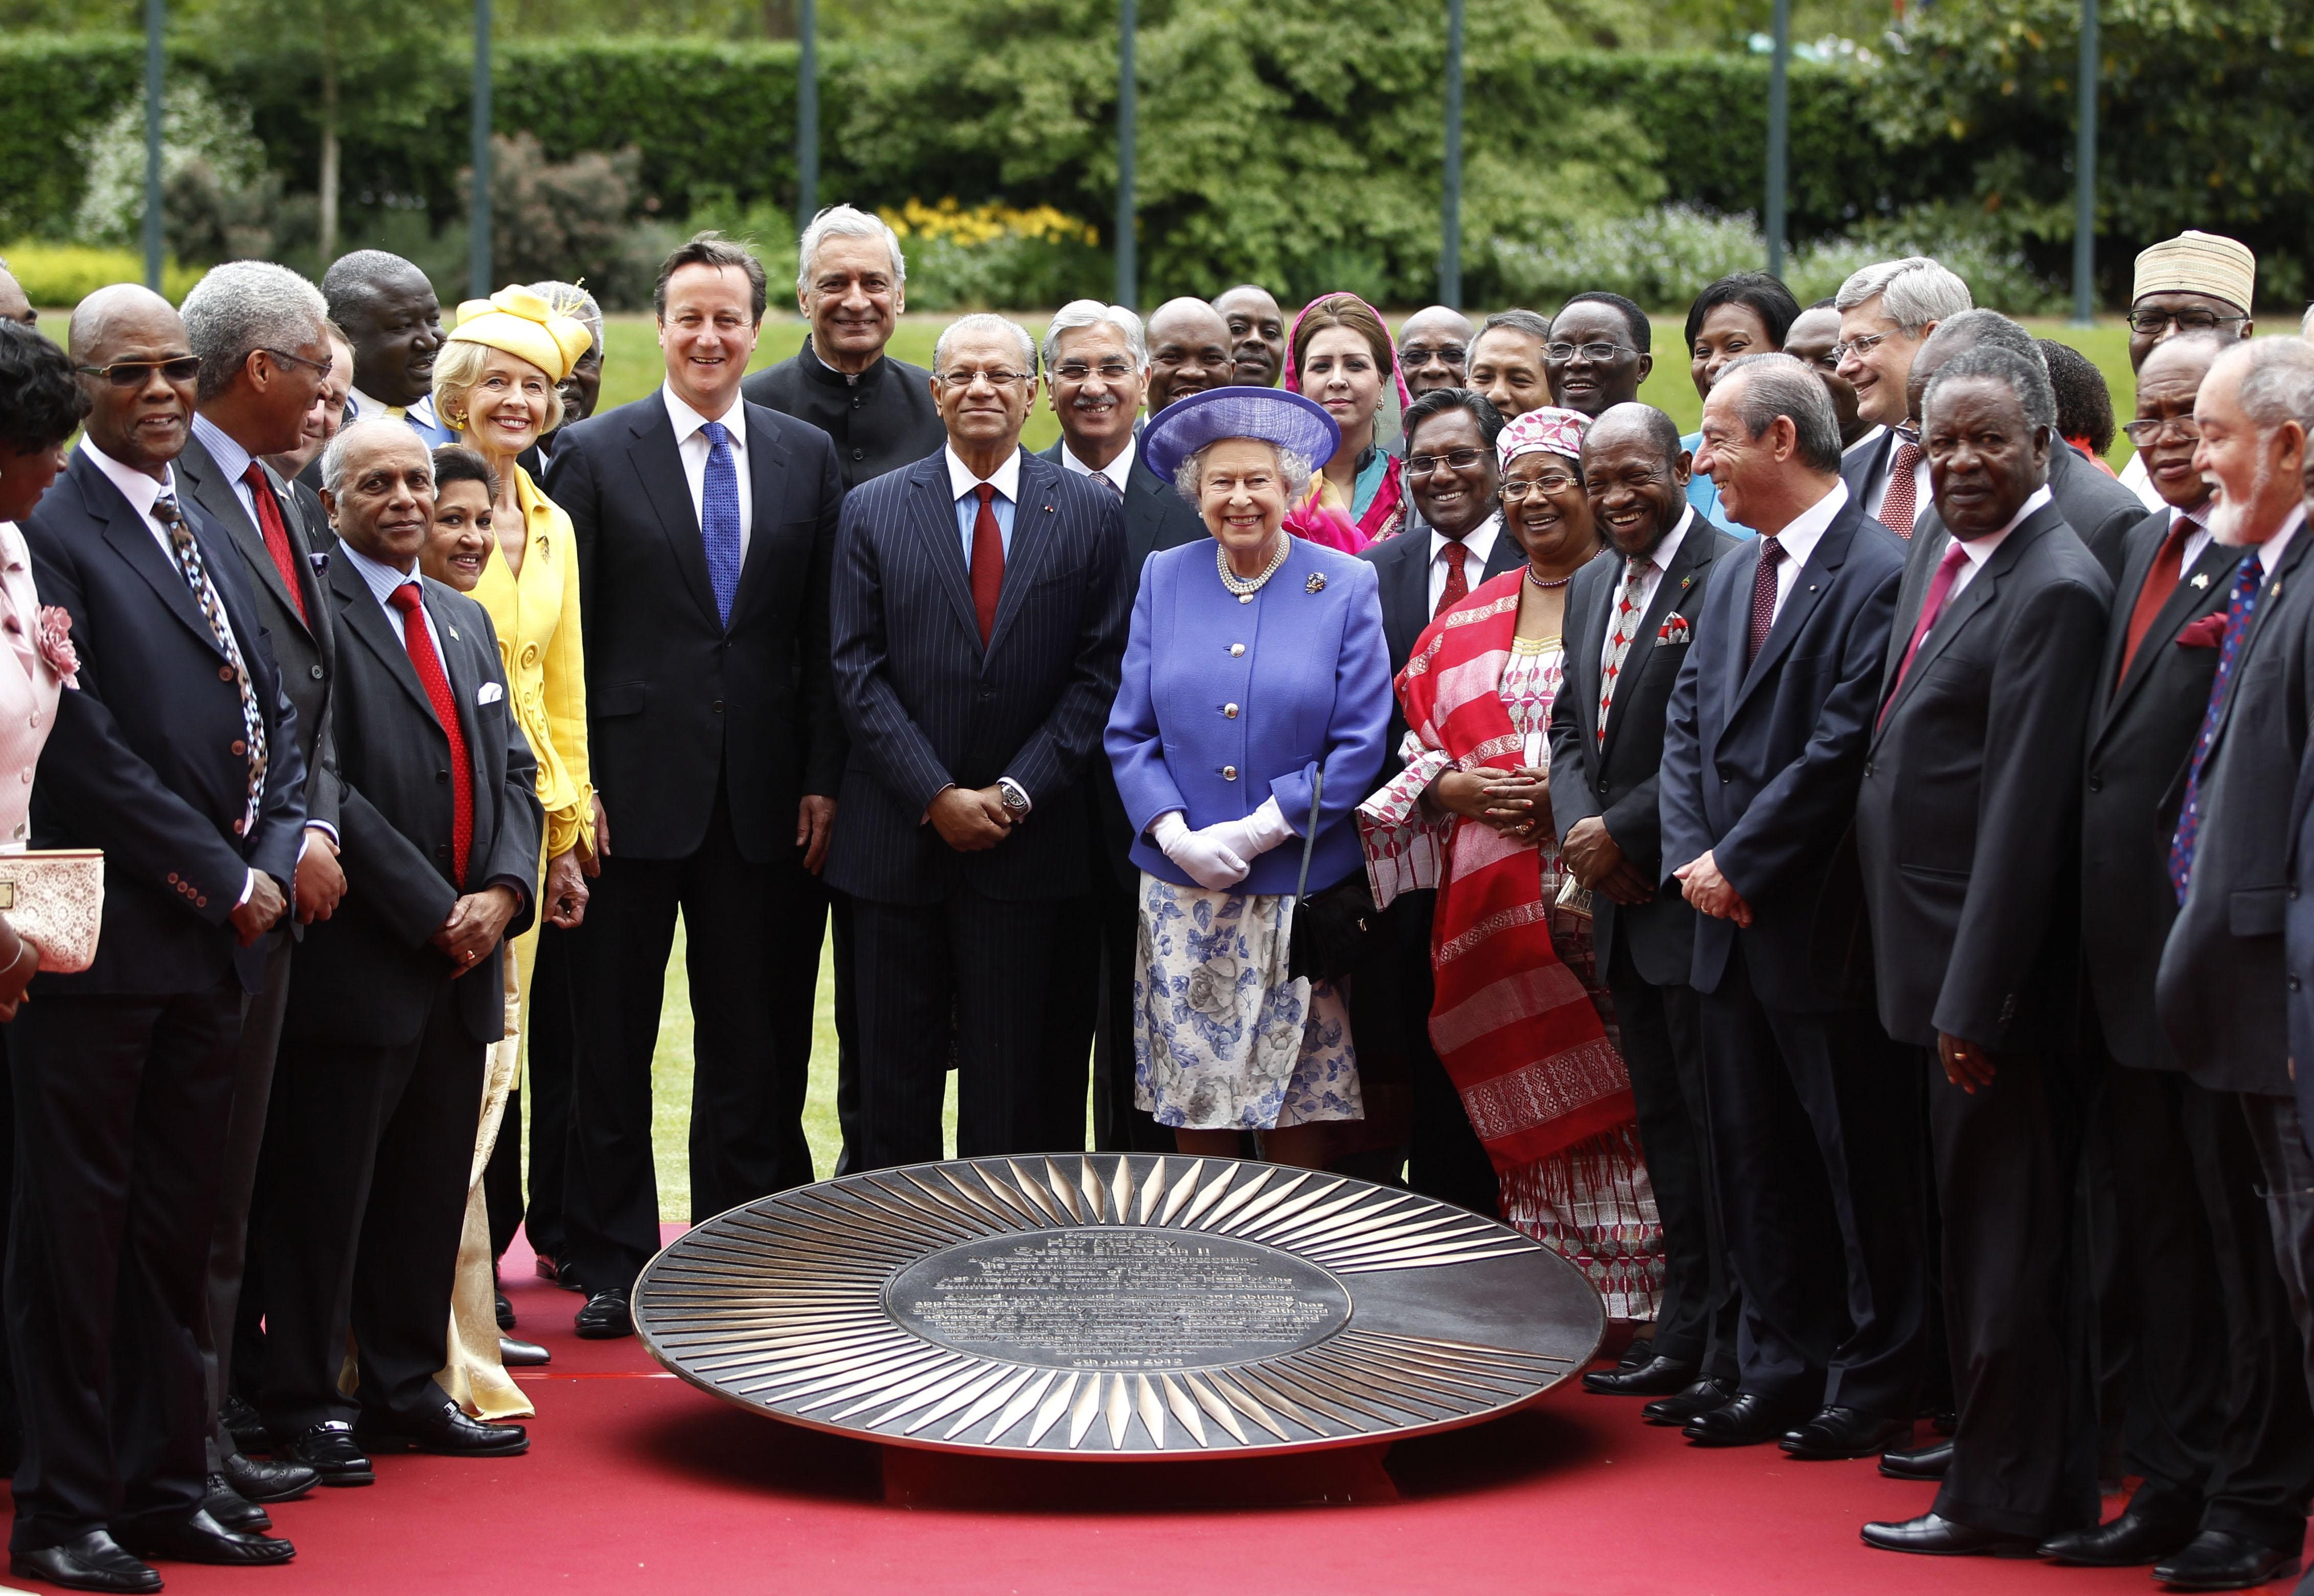 2012 traf sich Queen Elizabeth mit Vertretern des Commonwealth. Ihr lag die Verbindung sehr am Herzen.